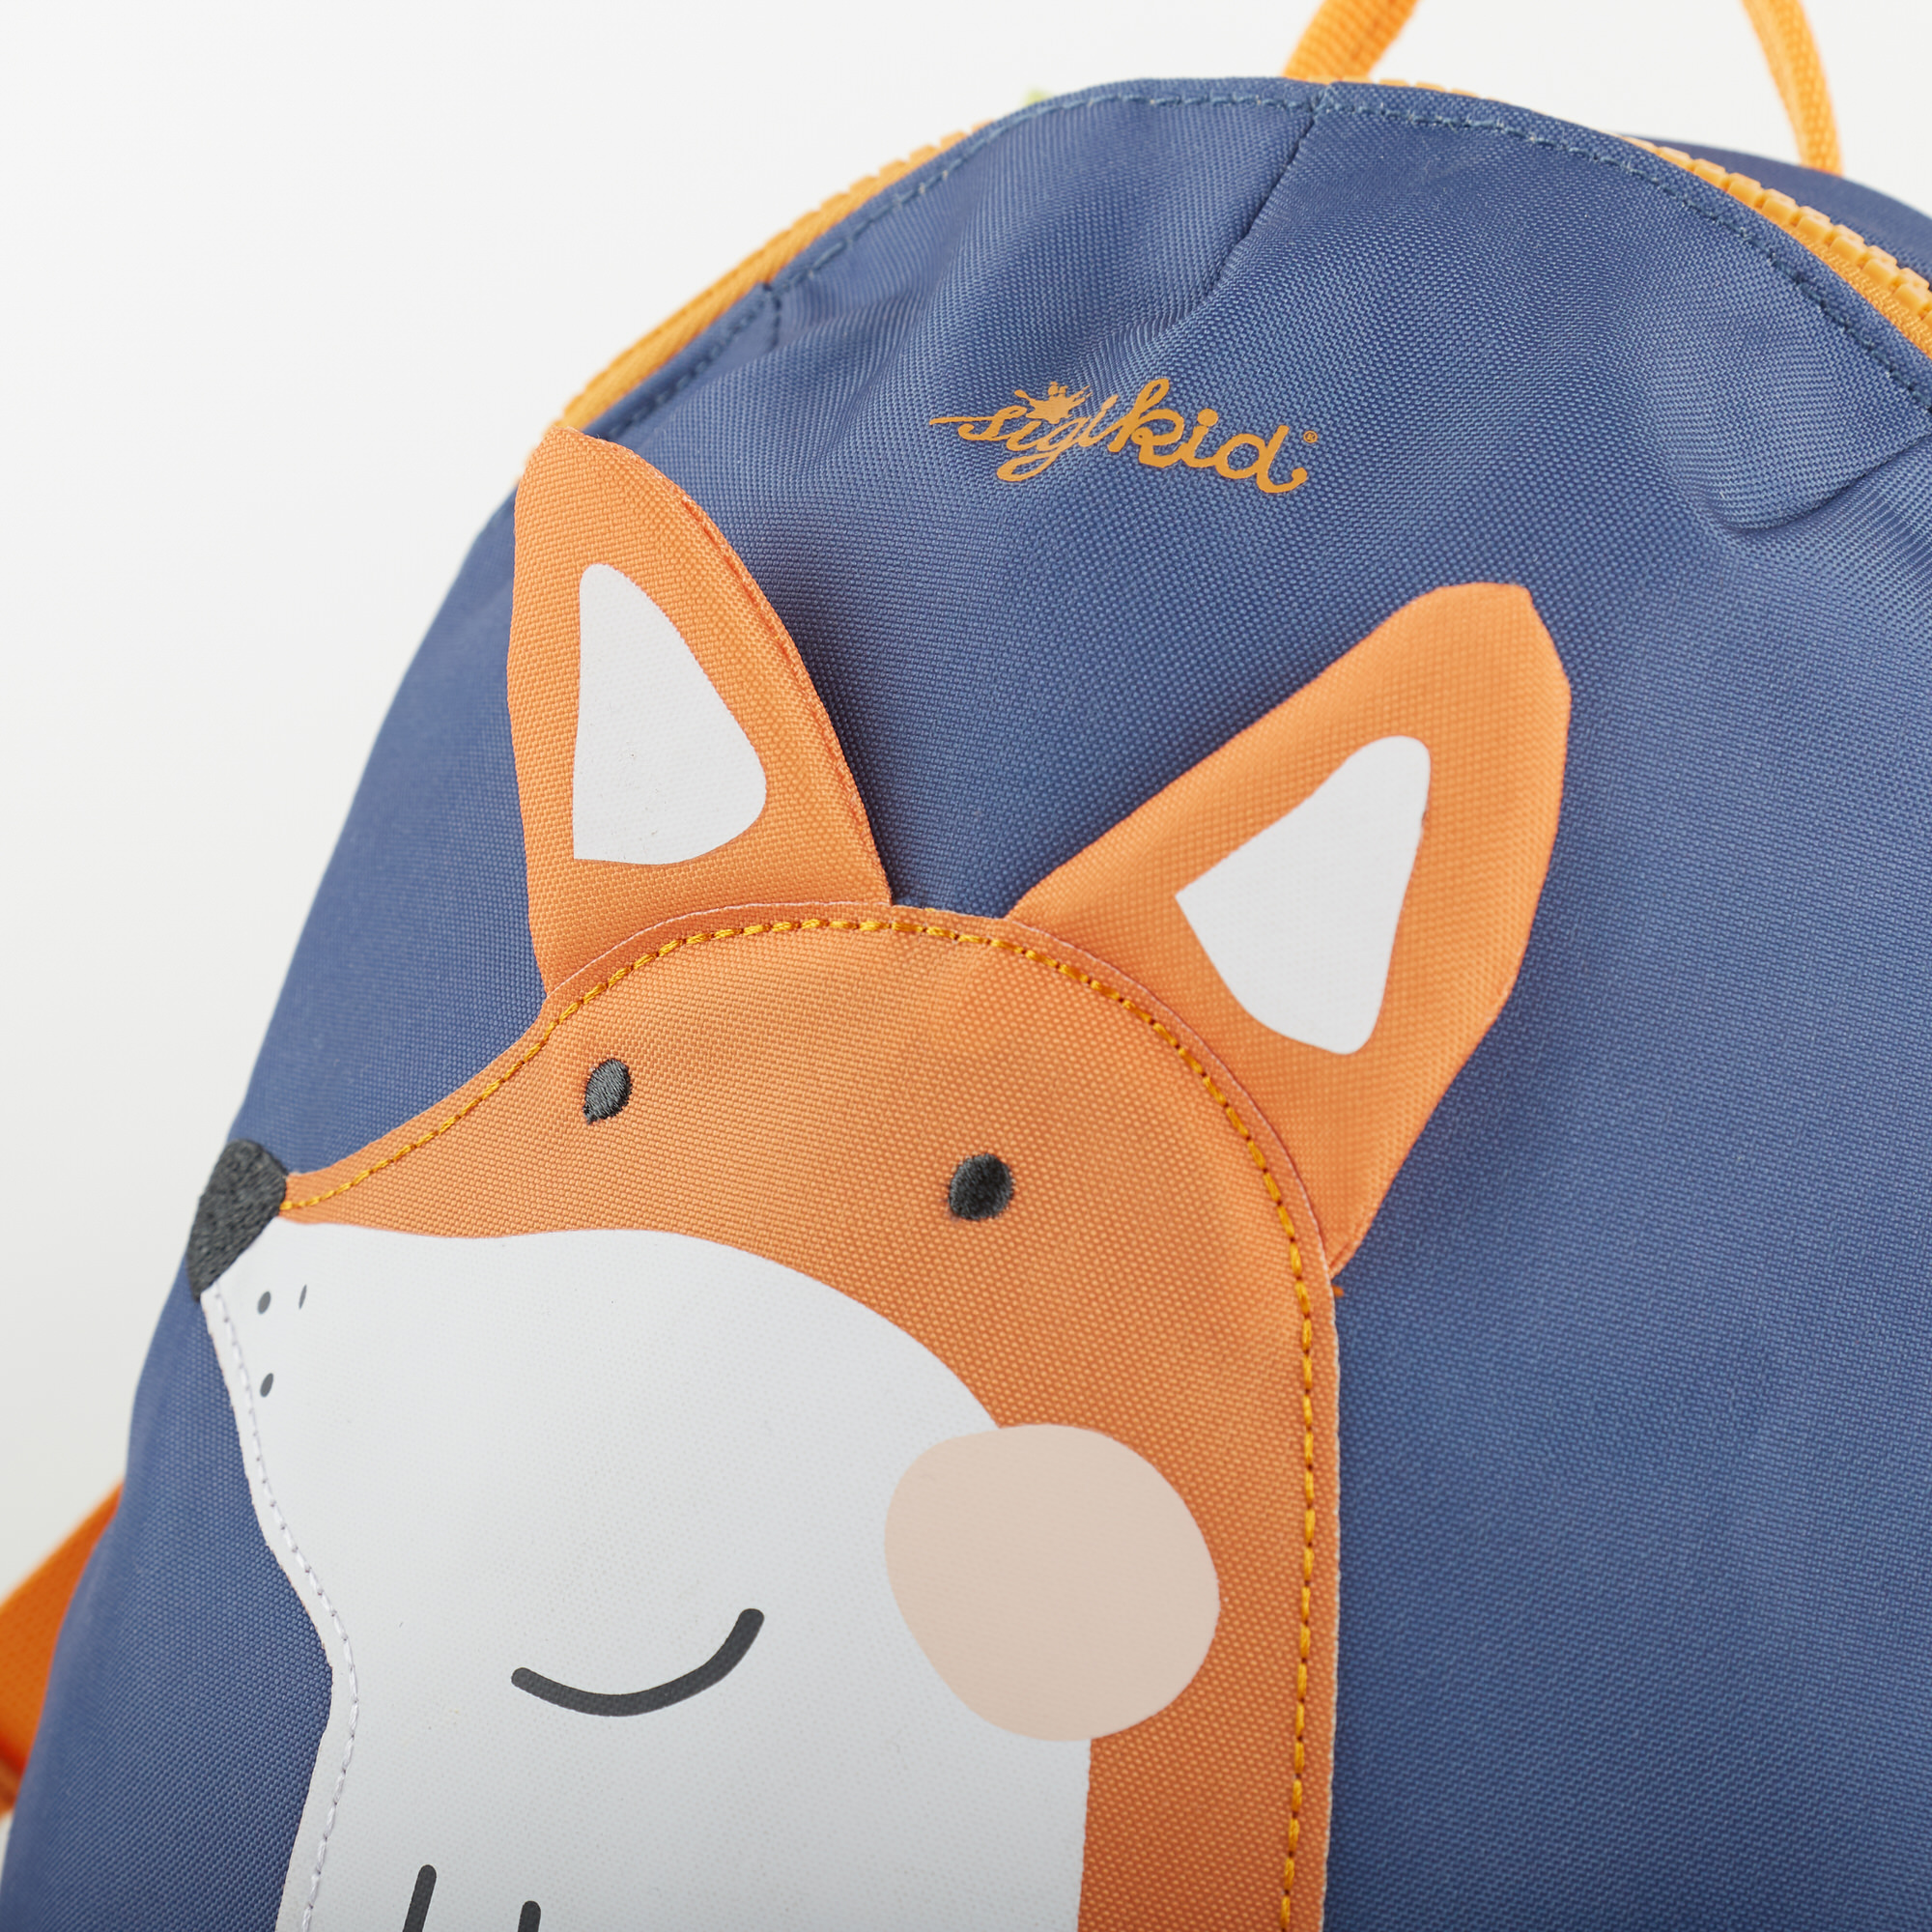 Mini backpack fox